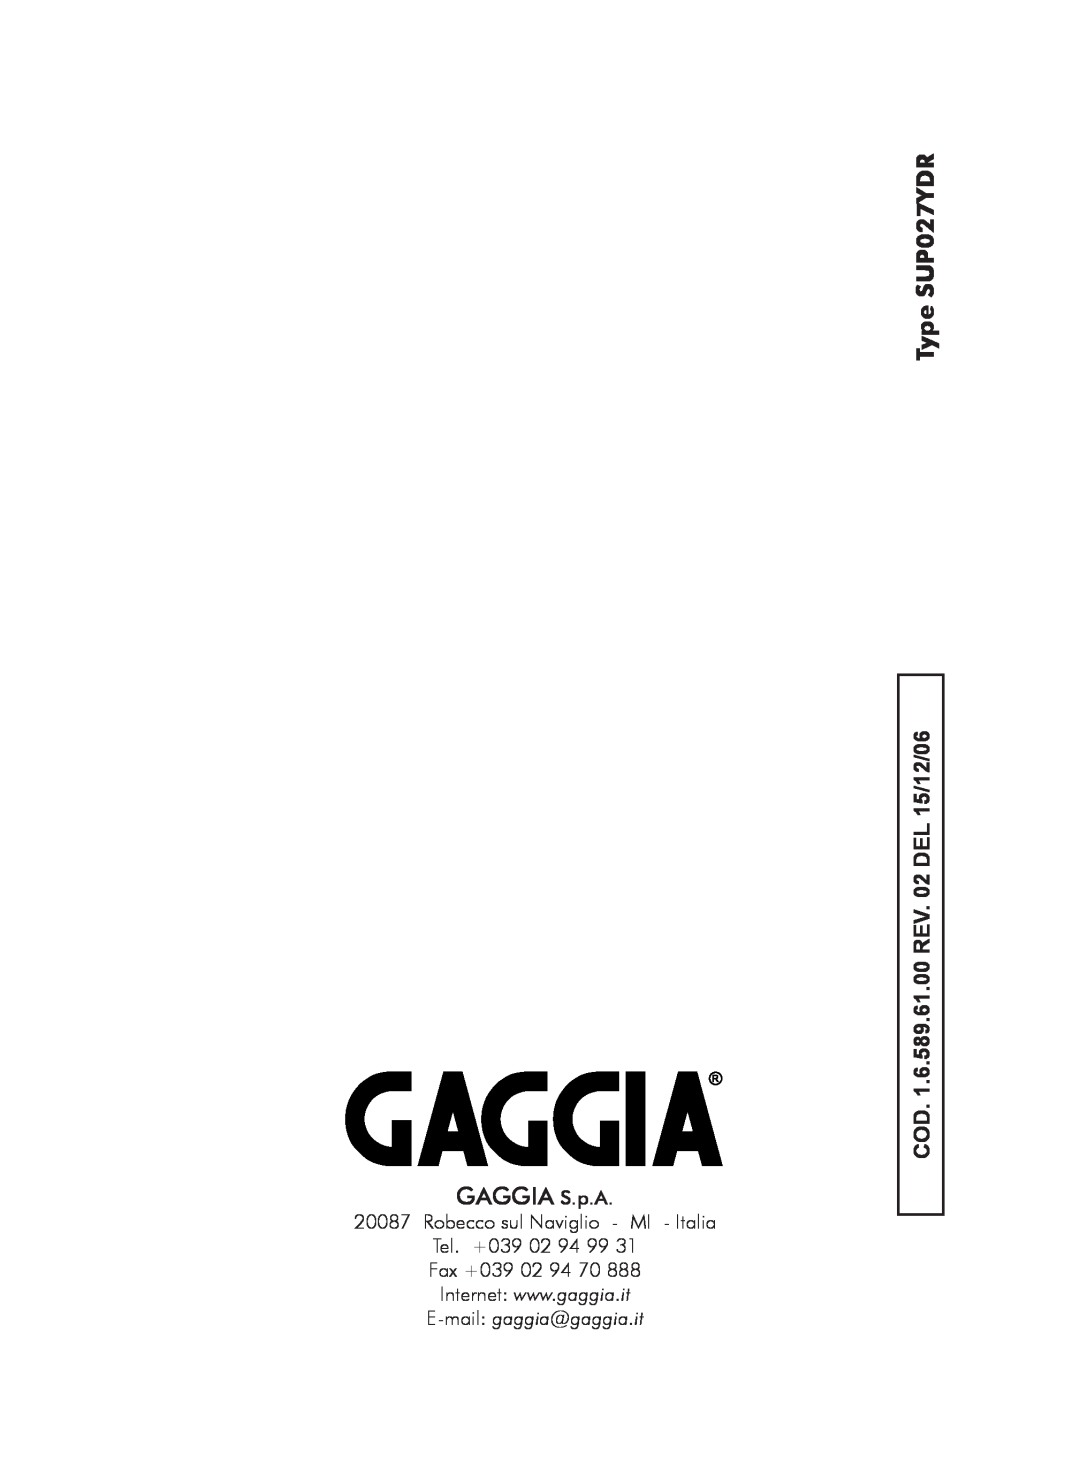 Gaggia manual GAGGIA S.p.A, Type SUP027YDR, COD. 1.6.589.61.00 REV. 02 DEL 15/12/06 